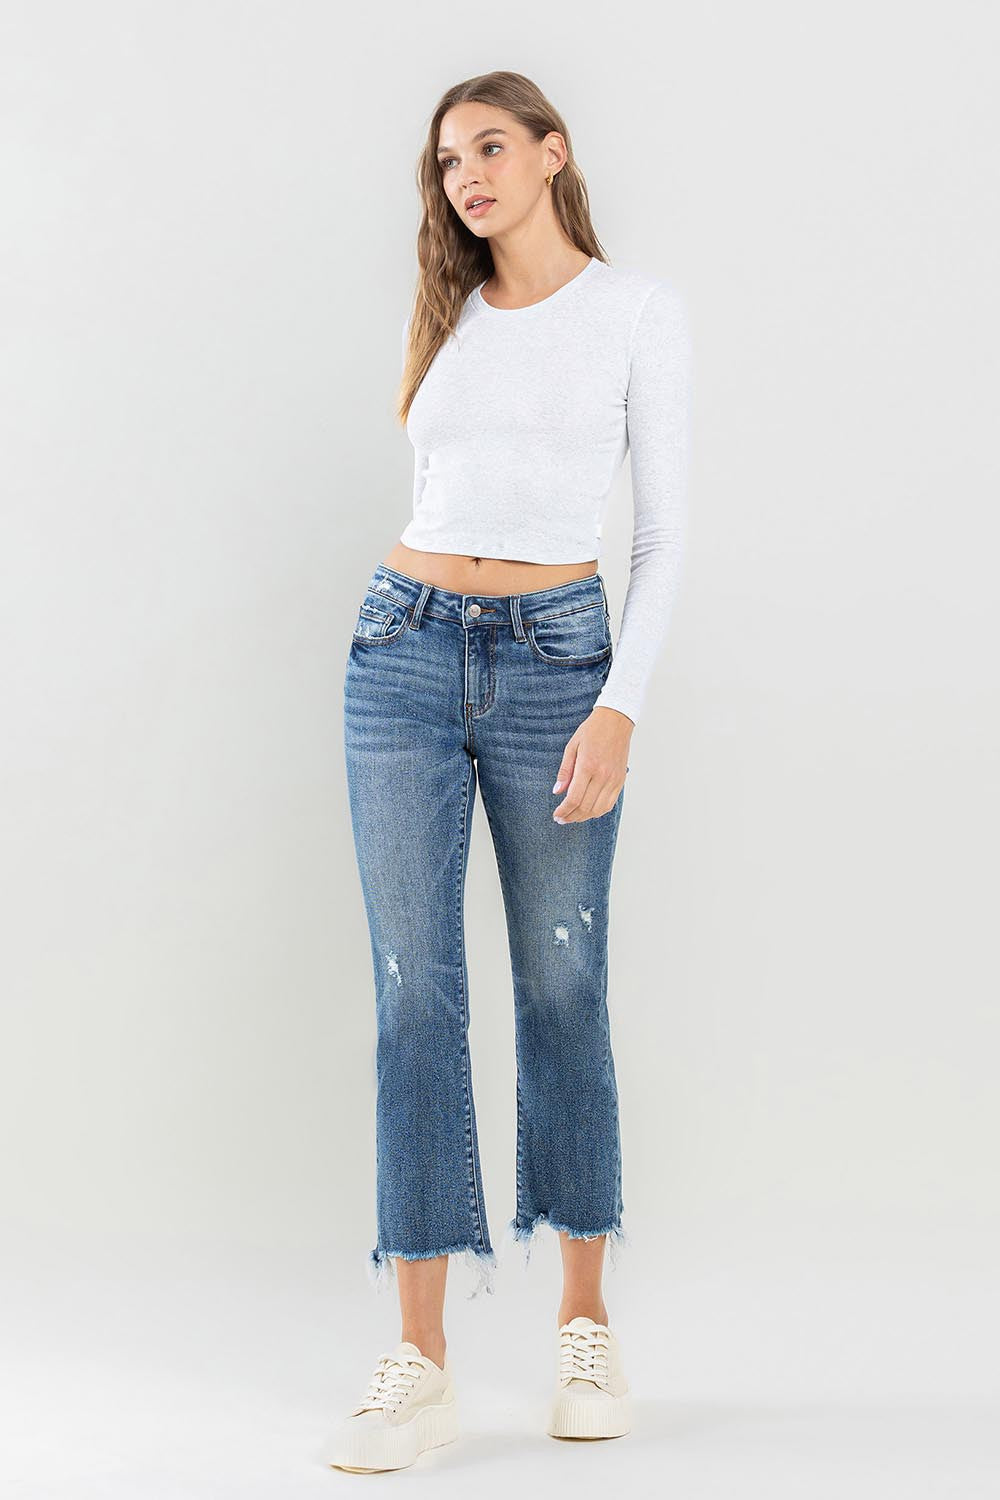 Lovervet Mid Rise Frayed Hem Jeans Trendsi